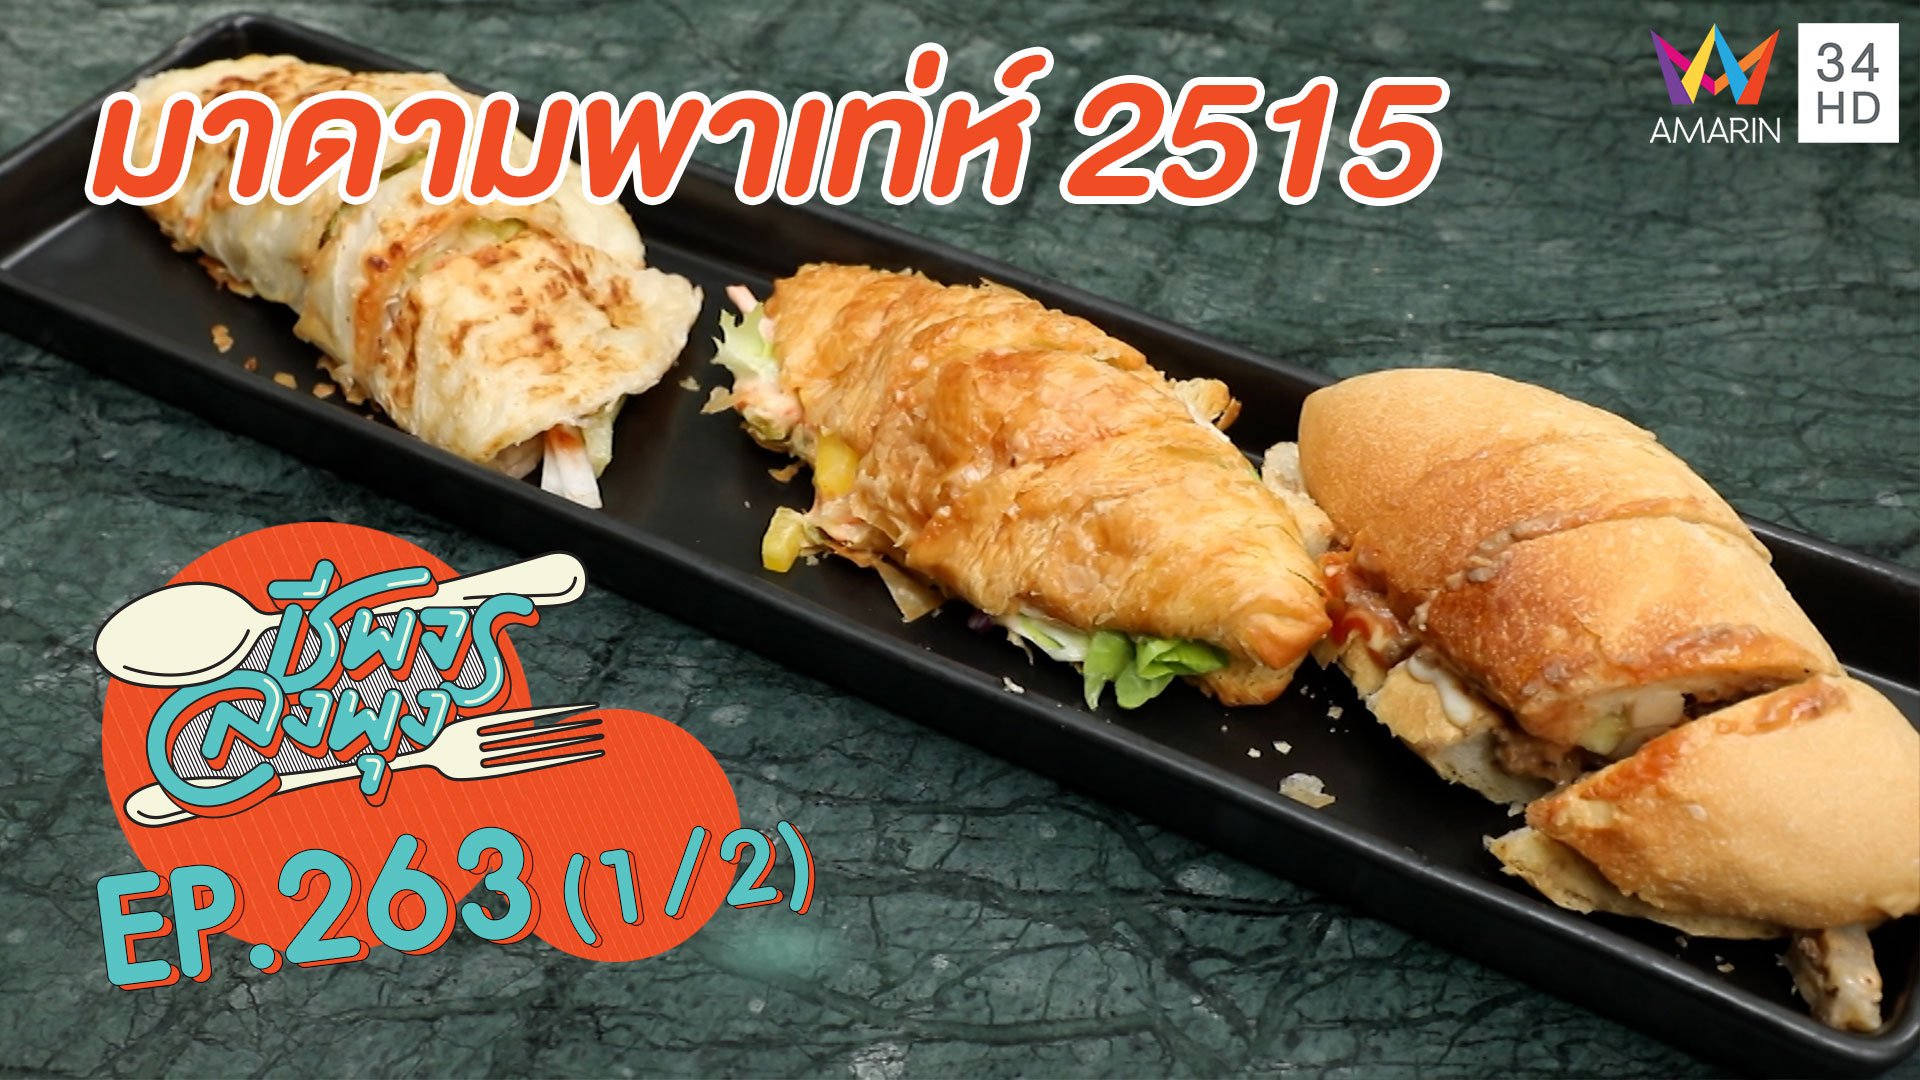 ลิ้มรสอาหารนานาชาติ 'ร้านมาดามพาเท่ห์'  | ชีพจรลงพุง | 13 ธ.ค. 63 (1/2) | AMARIN TVHD34